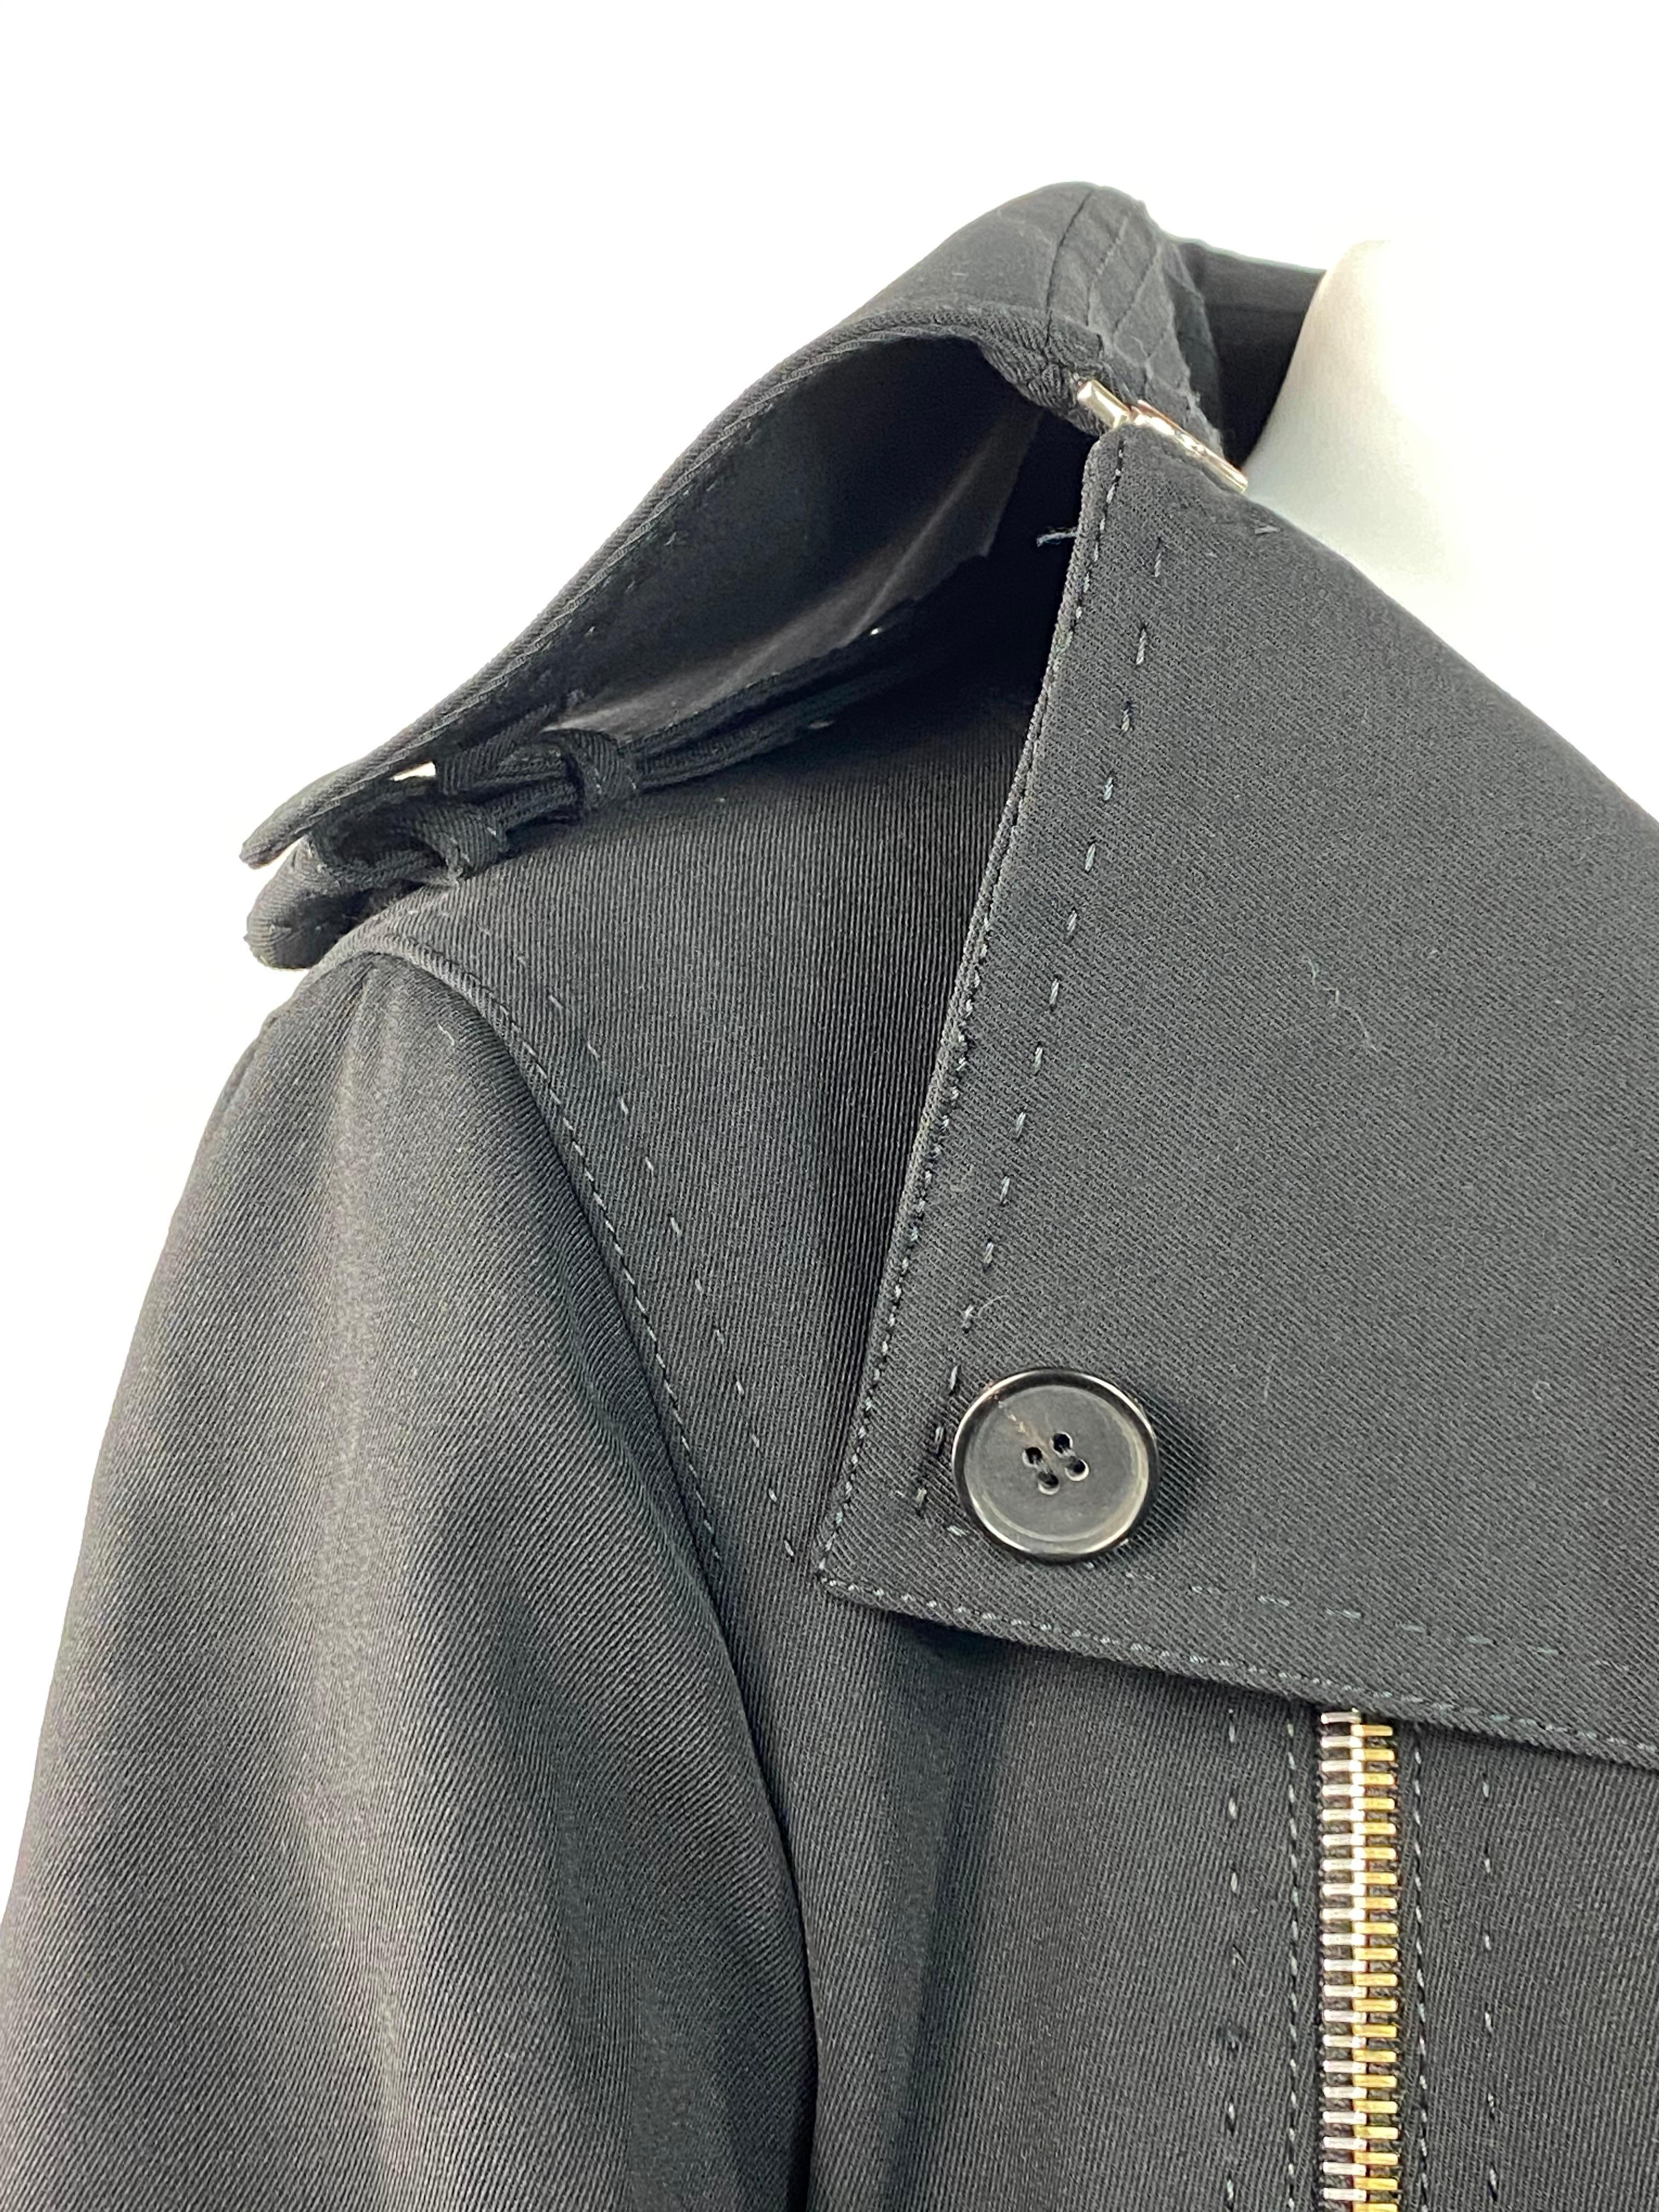 Gianfranco Ferre Black Wool Long Coat Jacket w/ Belt Size 44 For Sale 8